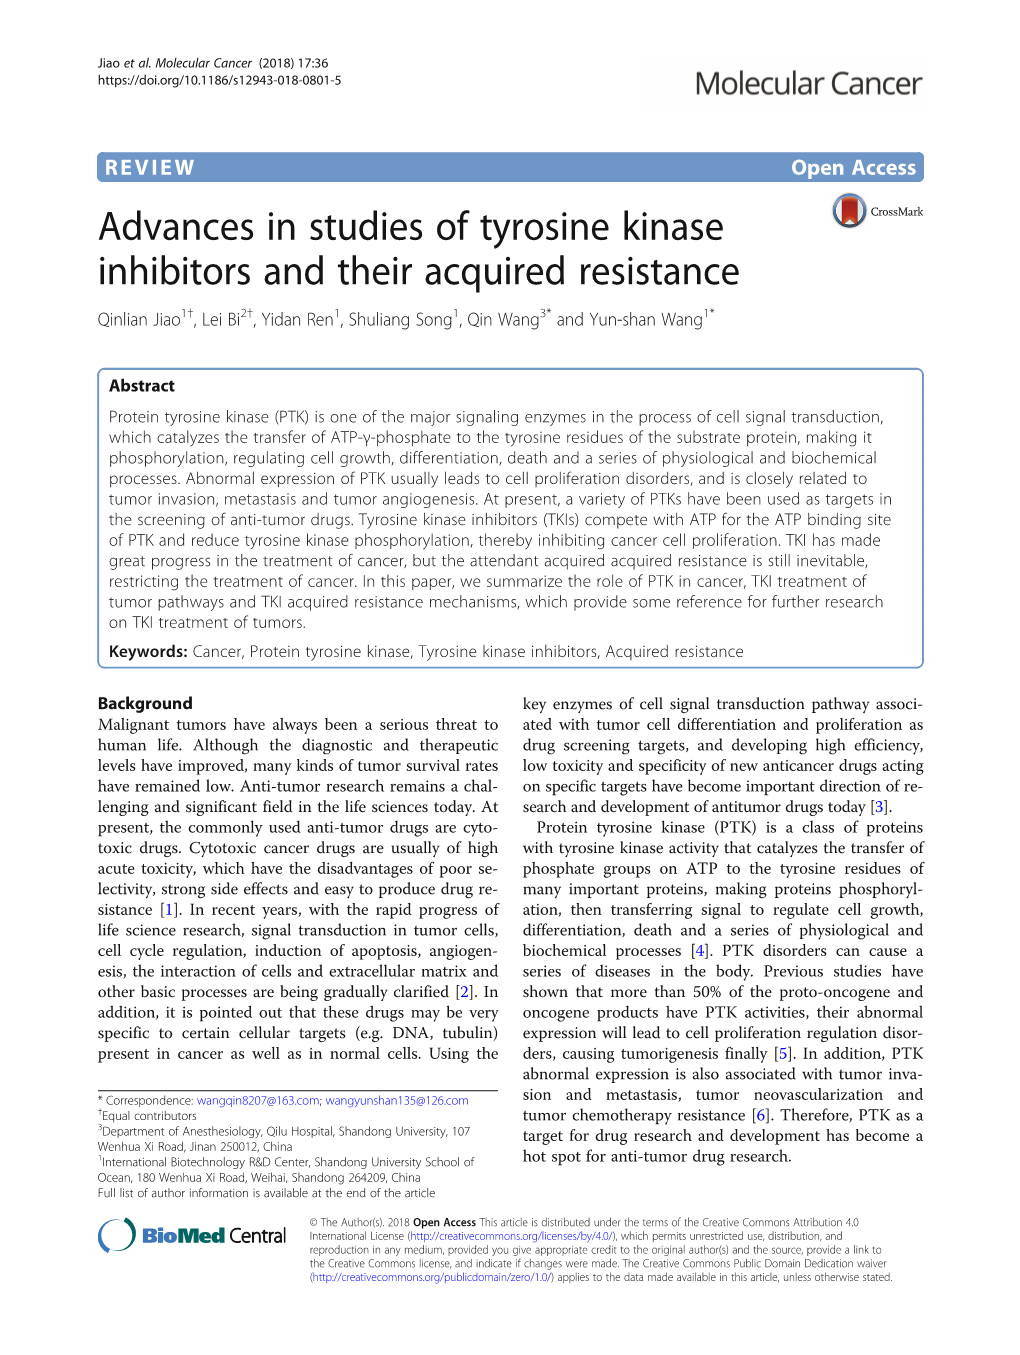 Advances in Studies of Tyrosine Kinase Inhibitors and Their Acquired Resistance Qinlian Jiao1†, Lei Bi2†, Yidan Ren1, Shuliang Song1, Qin Wang3* and Yun-Shan Wang1*